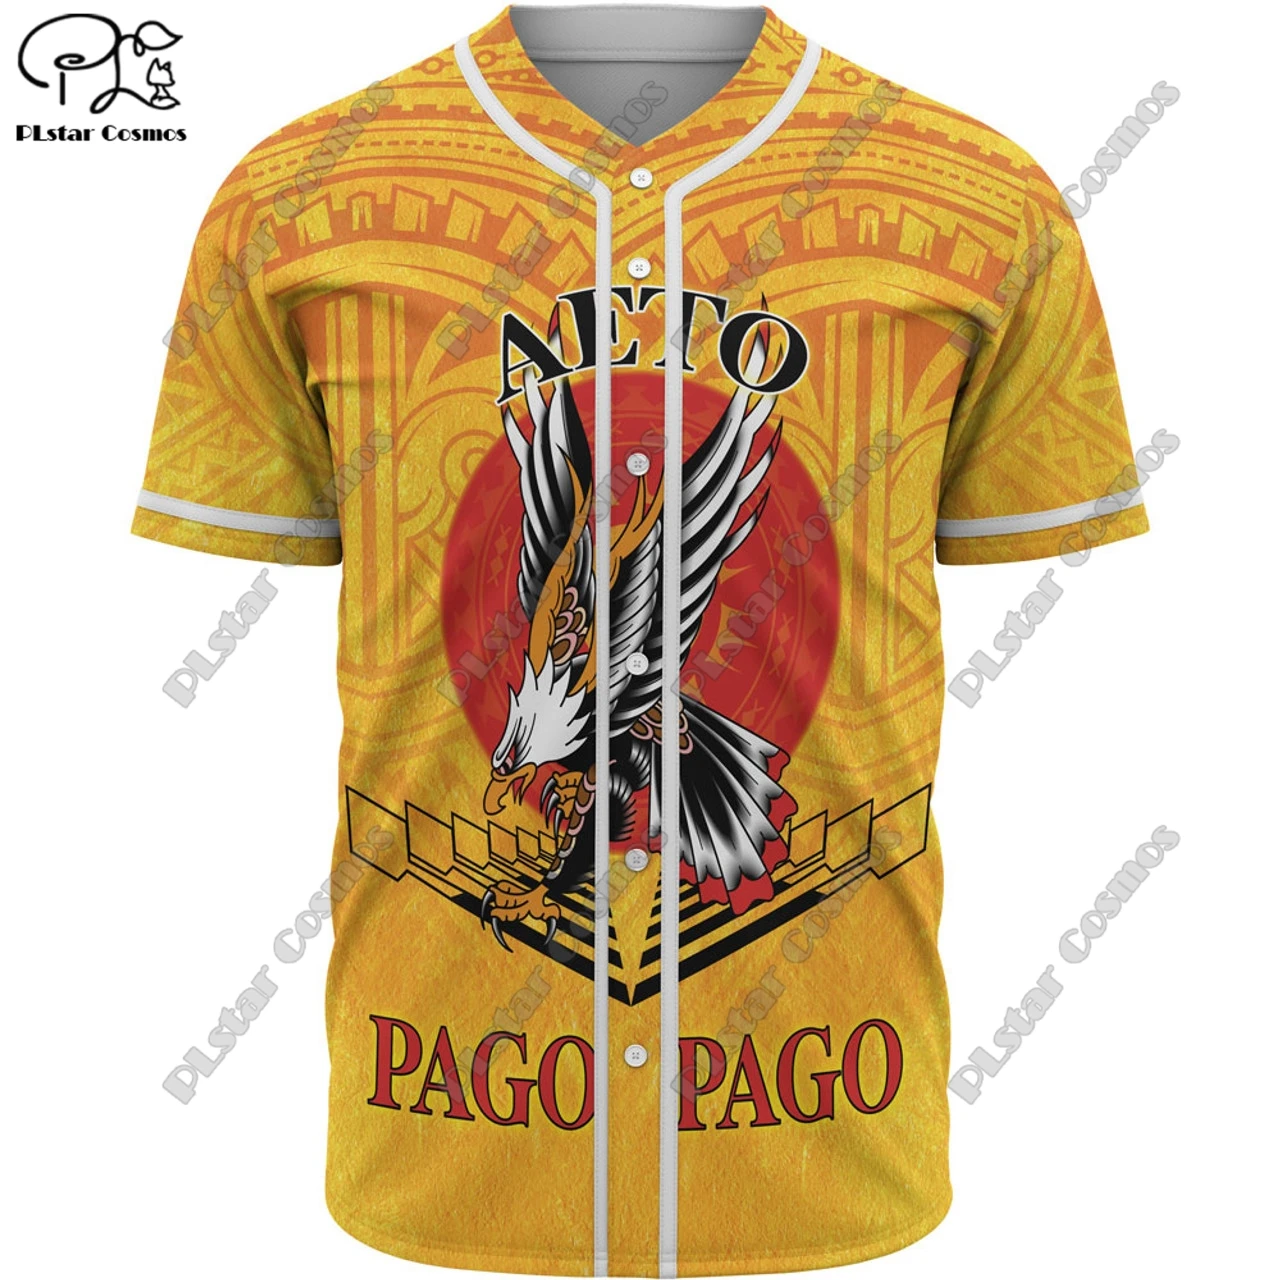 

3d-принт PLSTAR COSMOS, американское Самоа, бейсбольная рубашка под заказ черепаха, пальма, гибискус, полинезийское племя, тату